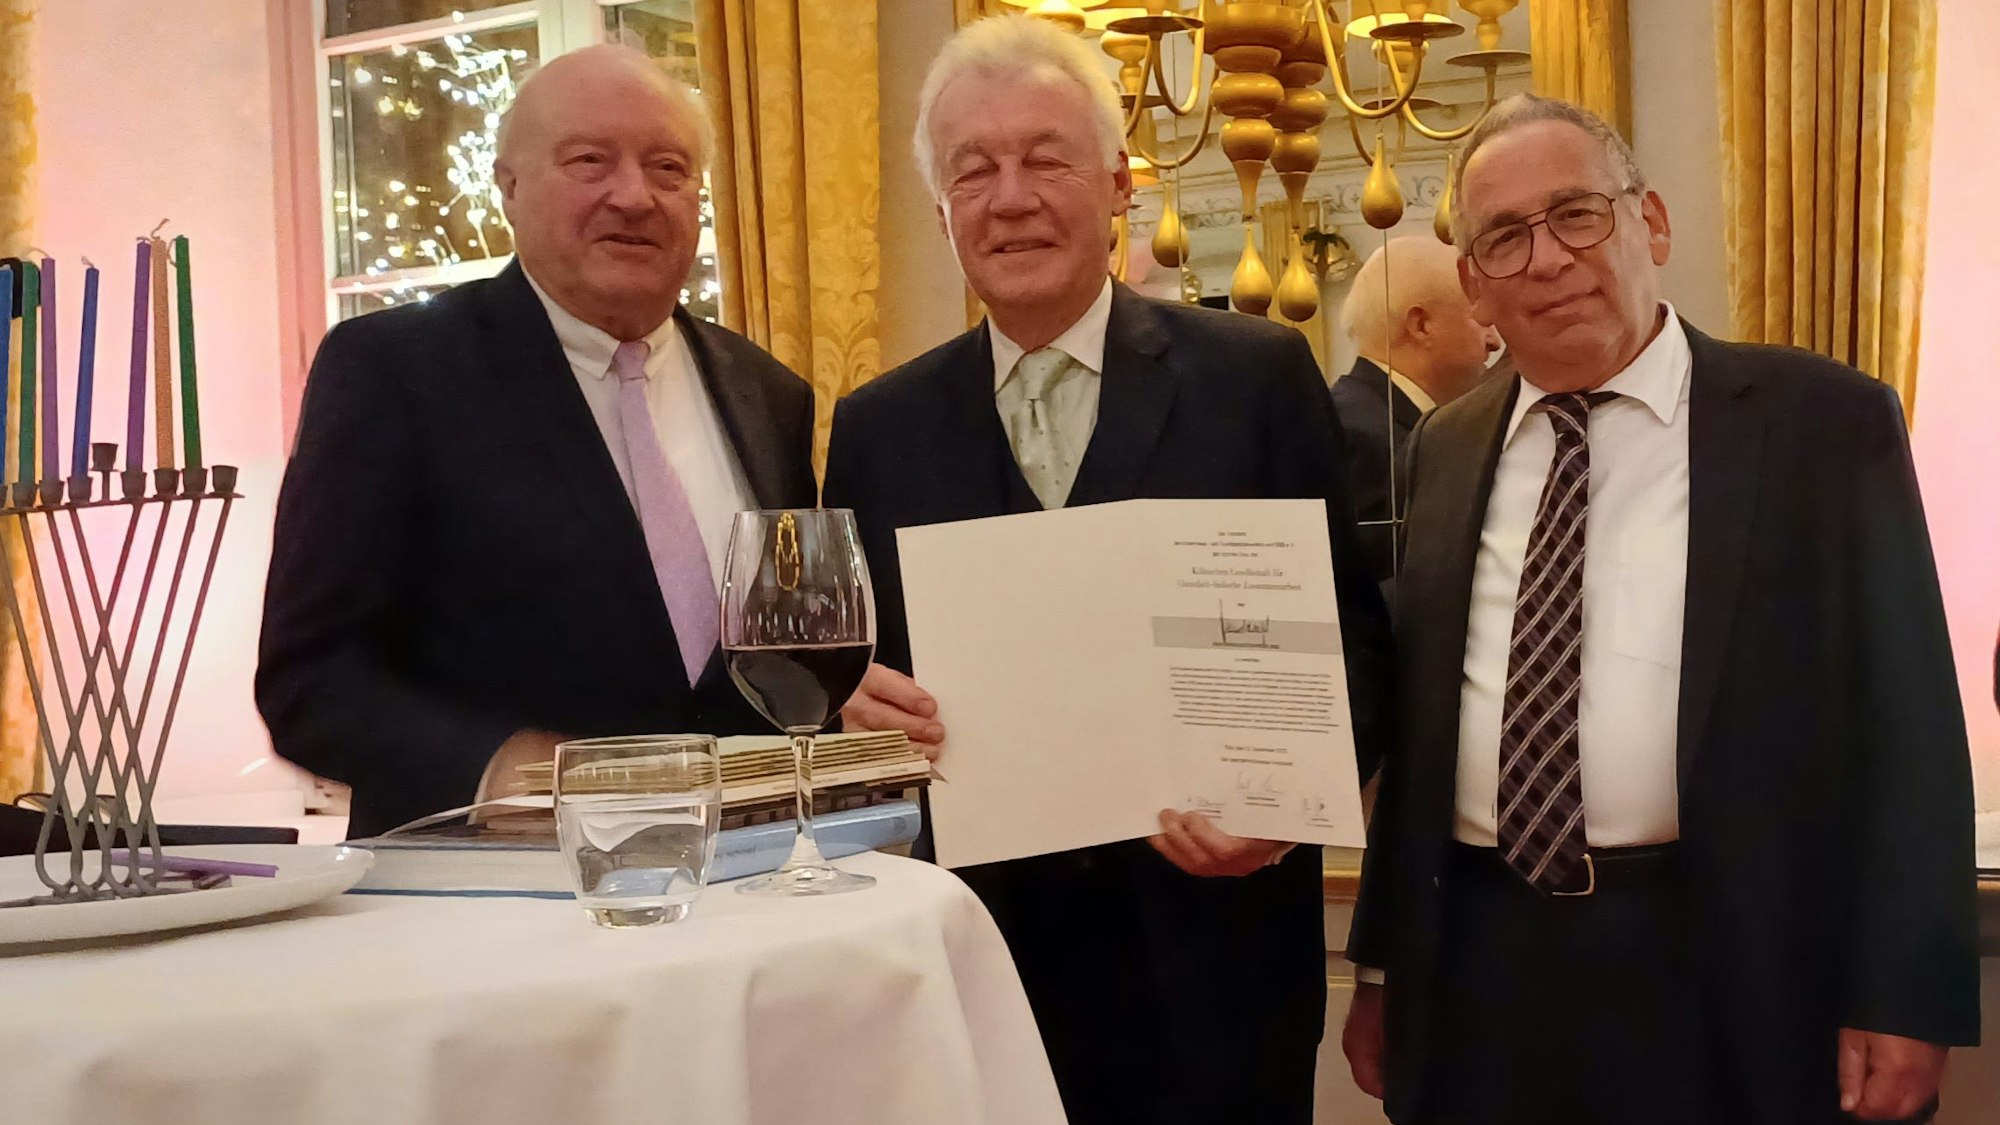 Wolkenburg Schaefer Preis v.l.n.r.: Konrad Adenauer (HuG), Prof. Jürgen Wilhelm, Miguel Freund